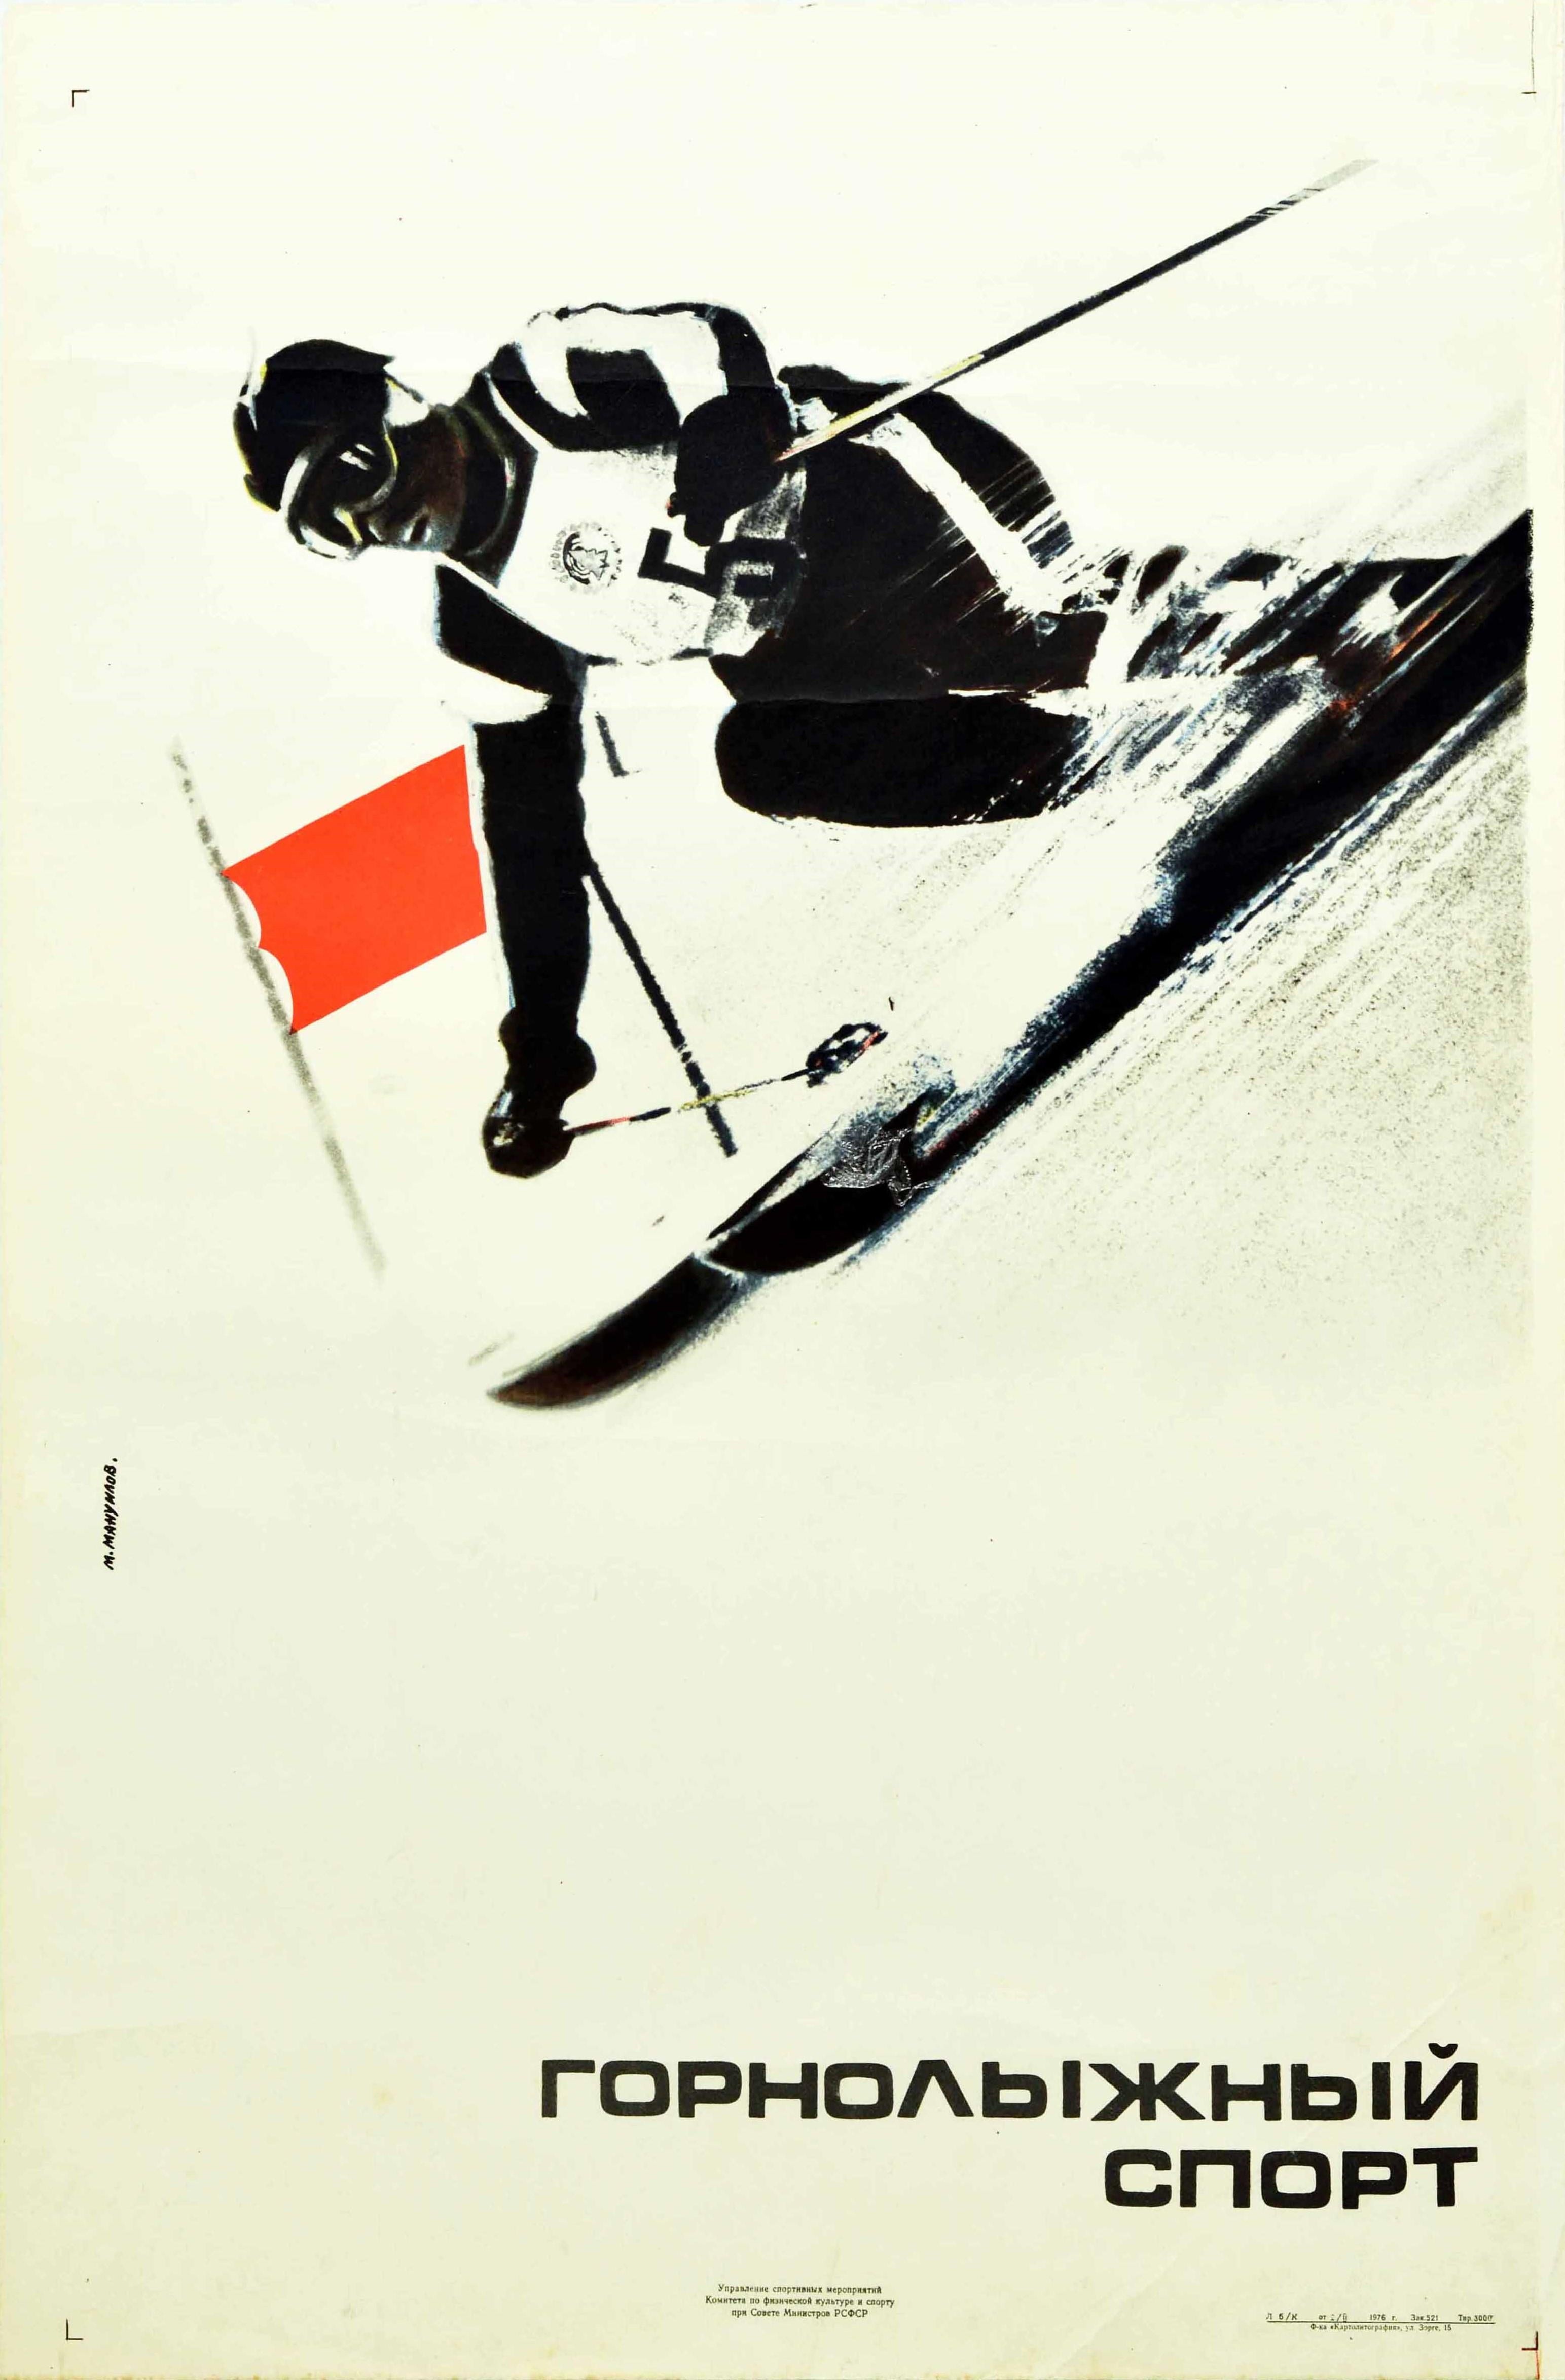 Original Vintage Skifahren Wintersport Plakat mit einer dynamischen Illustration eines Skifahrers in Skiausrüstung in schwarz und weiß dargestellt zoomt eine verschneite Piste mit Geschwindigkeit vorbei an einer roten Flagge mit dem Titel in fetten